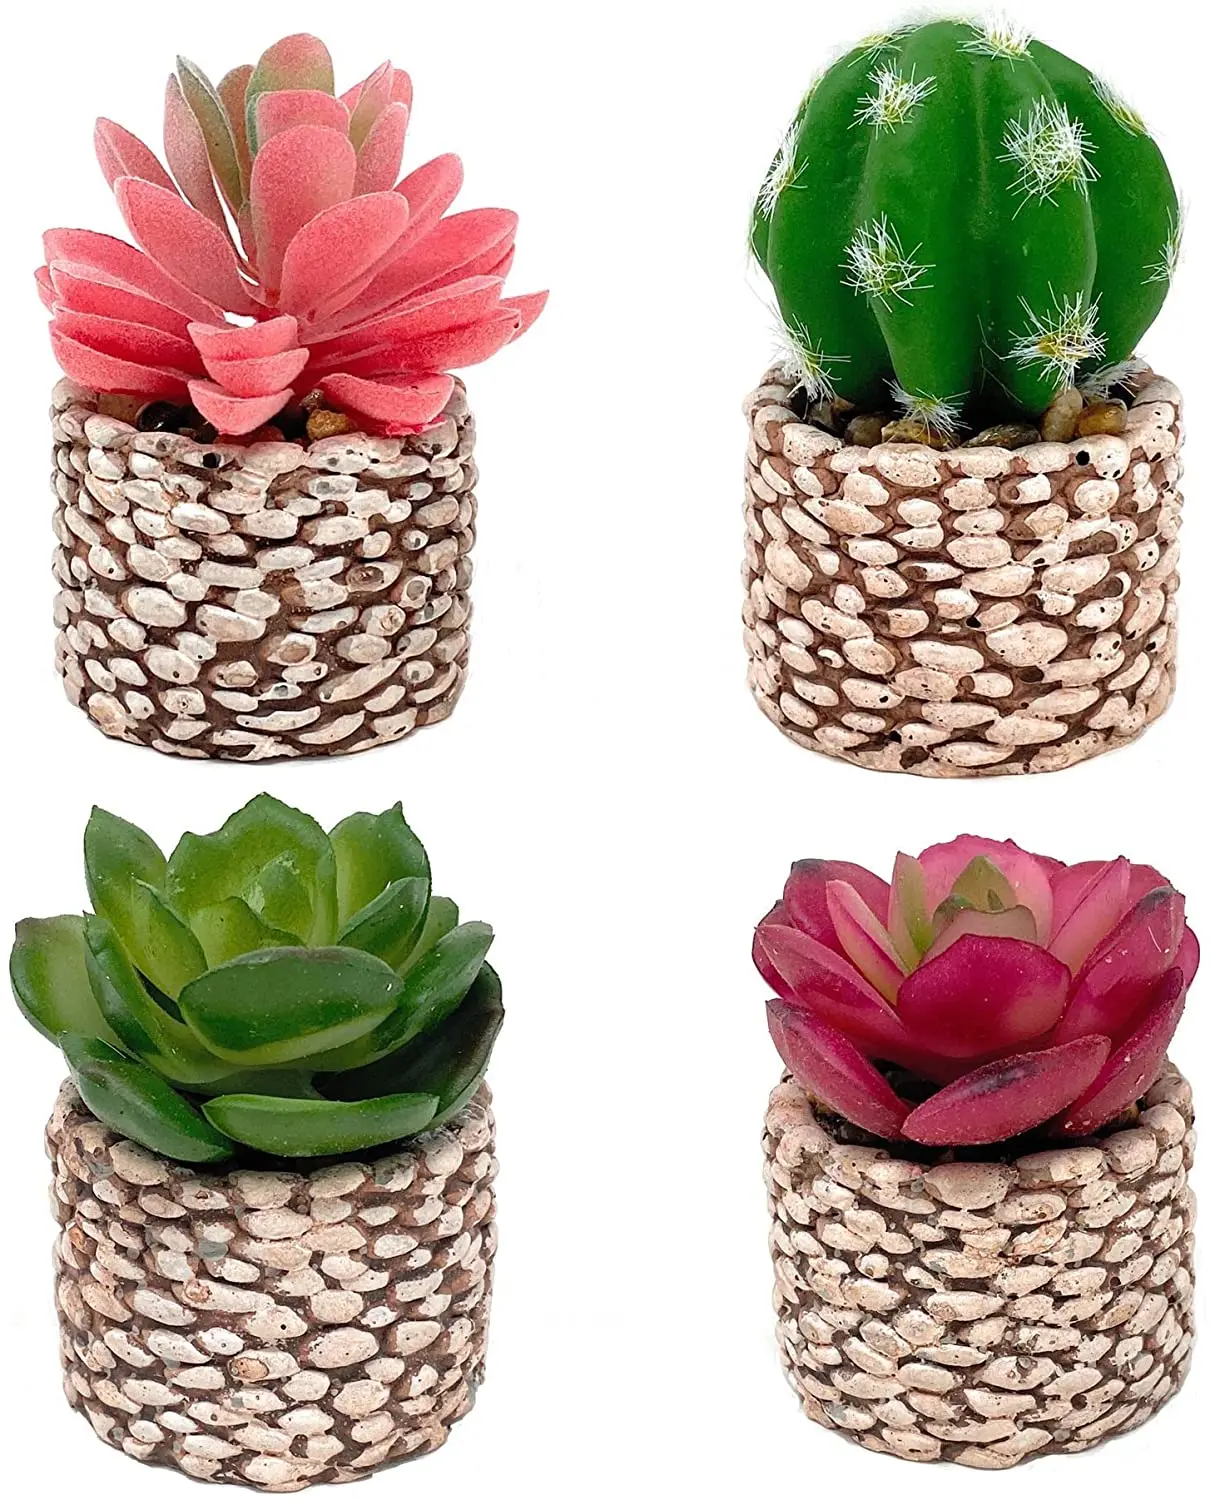 

Искусственные суккуленты, маленькие растения, набор из 4 мини искусственных фотоэлементов в каменных горшках